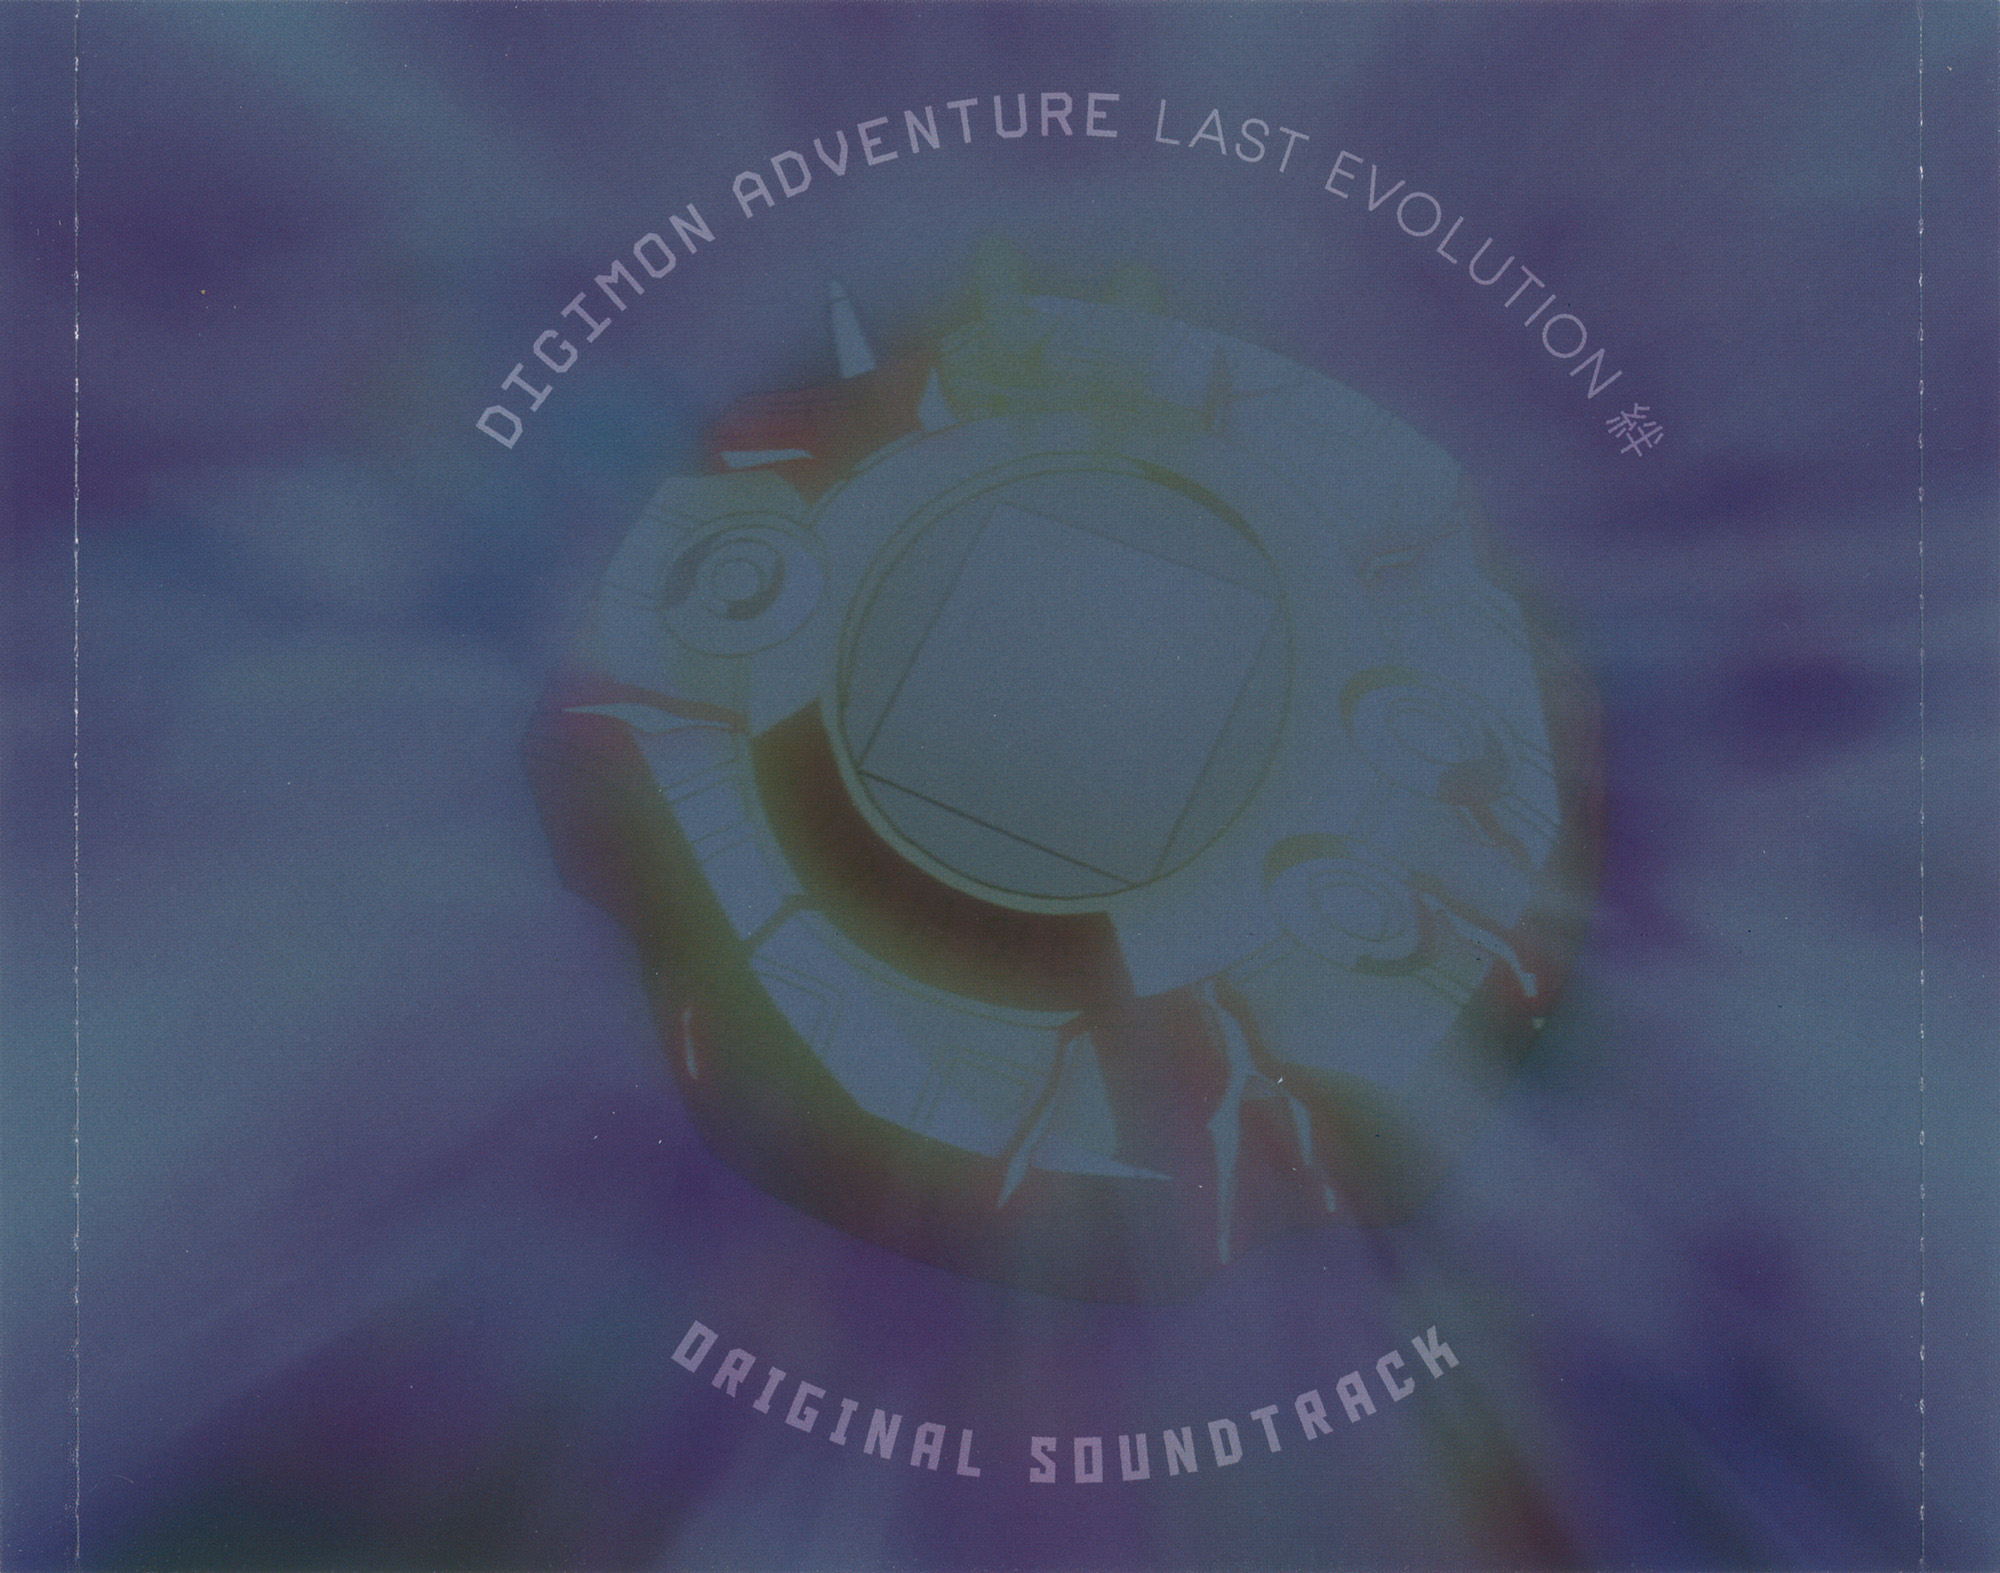 Digimon Adventure: Last Evolution Kizuna Original Soundtrack Announced for  July 29th